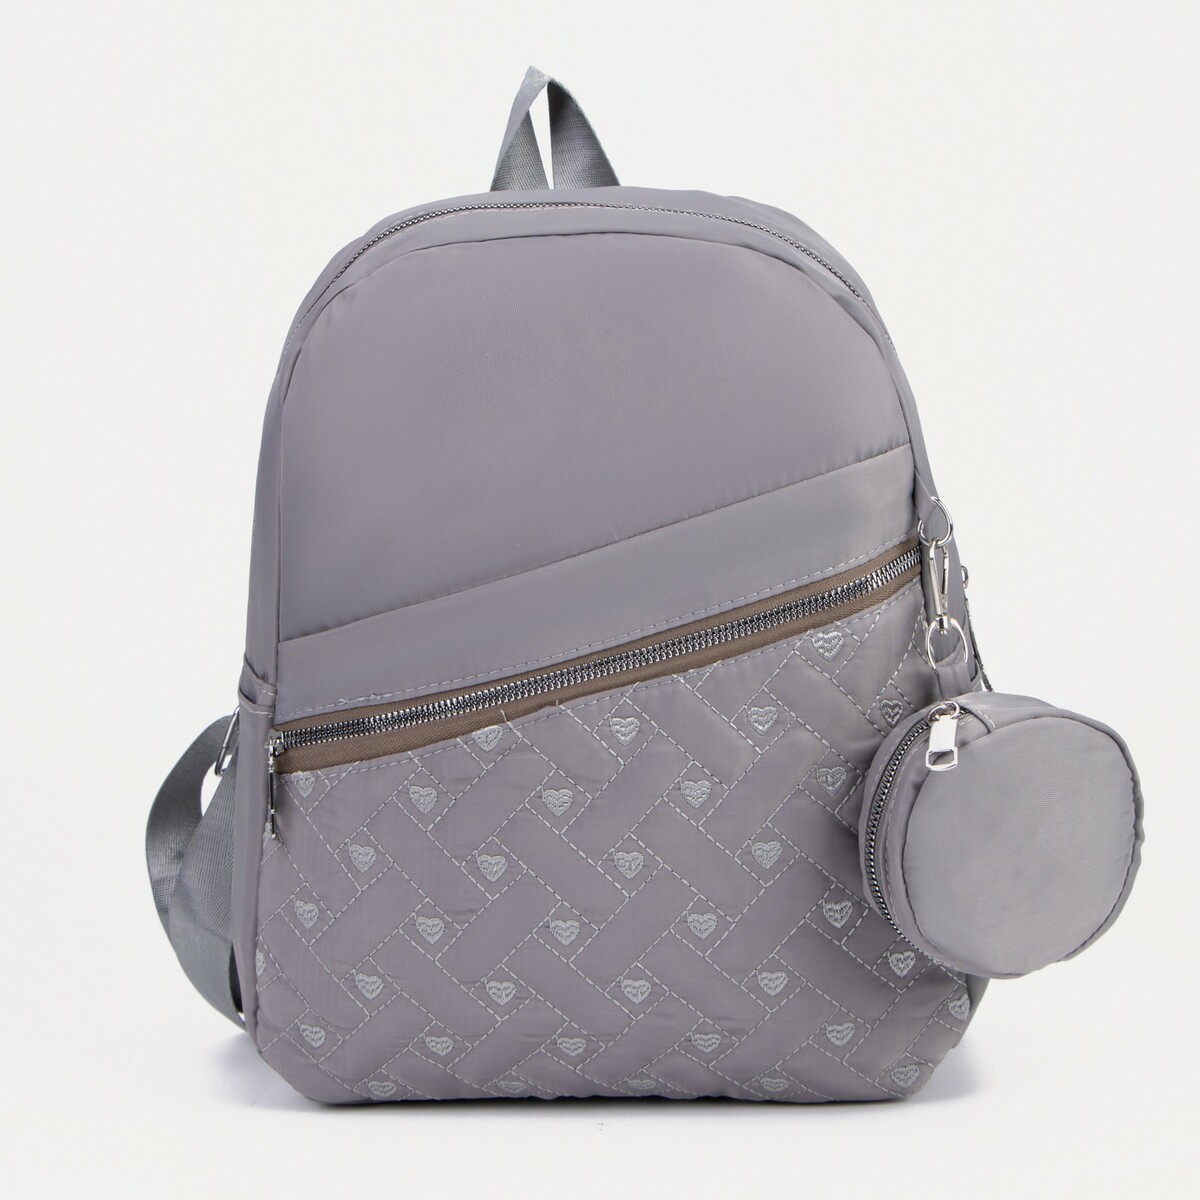 Рюкзак на молнии, наружный карман, 2 боковых кармана, кошелек, цвет серый, No brand